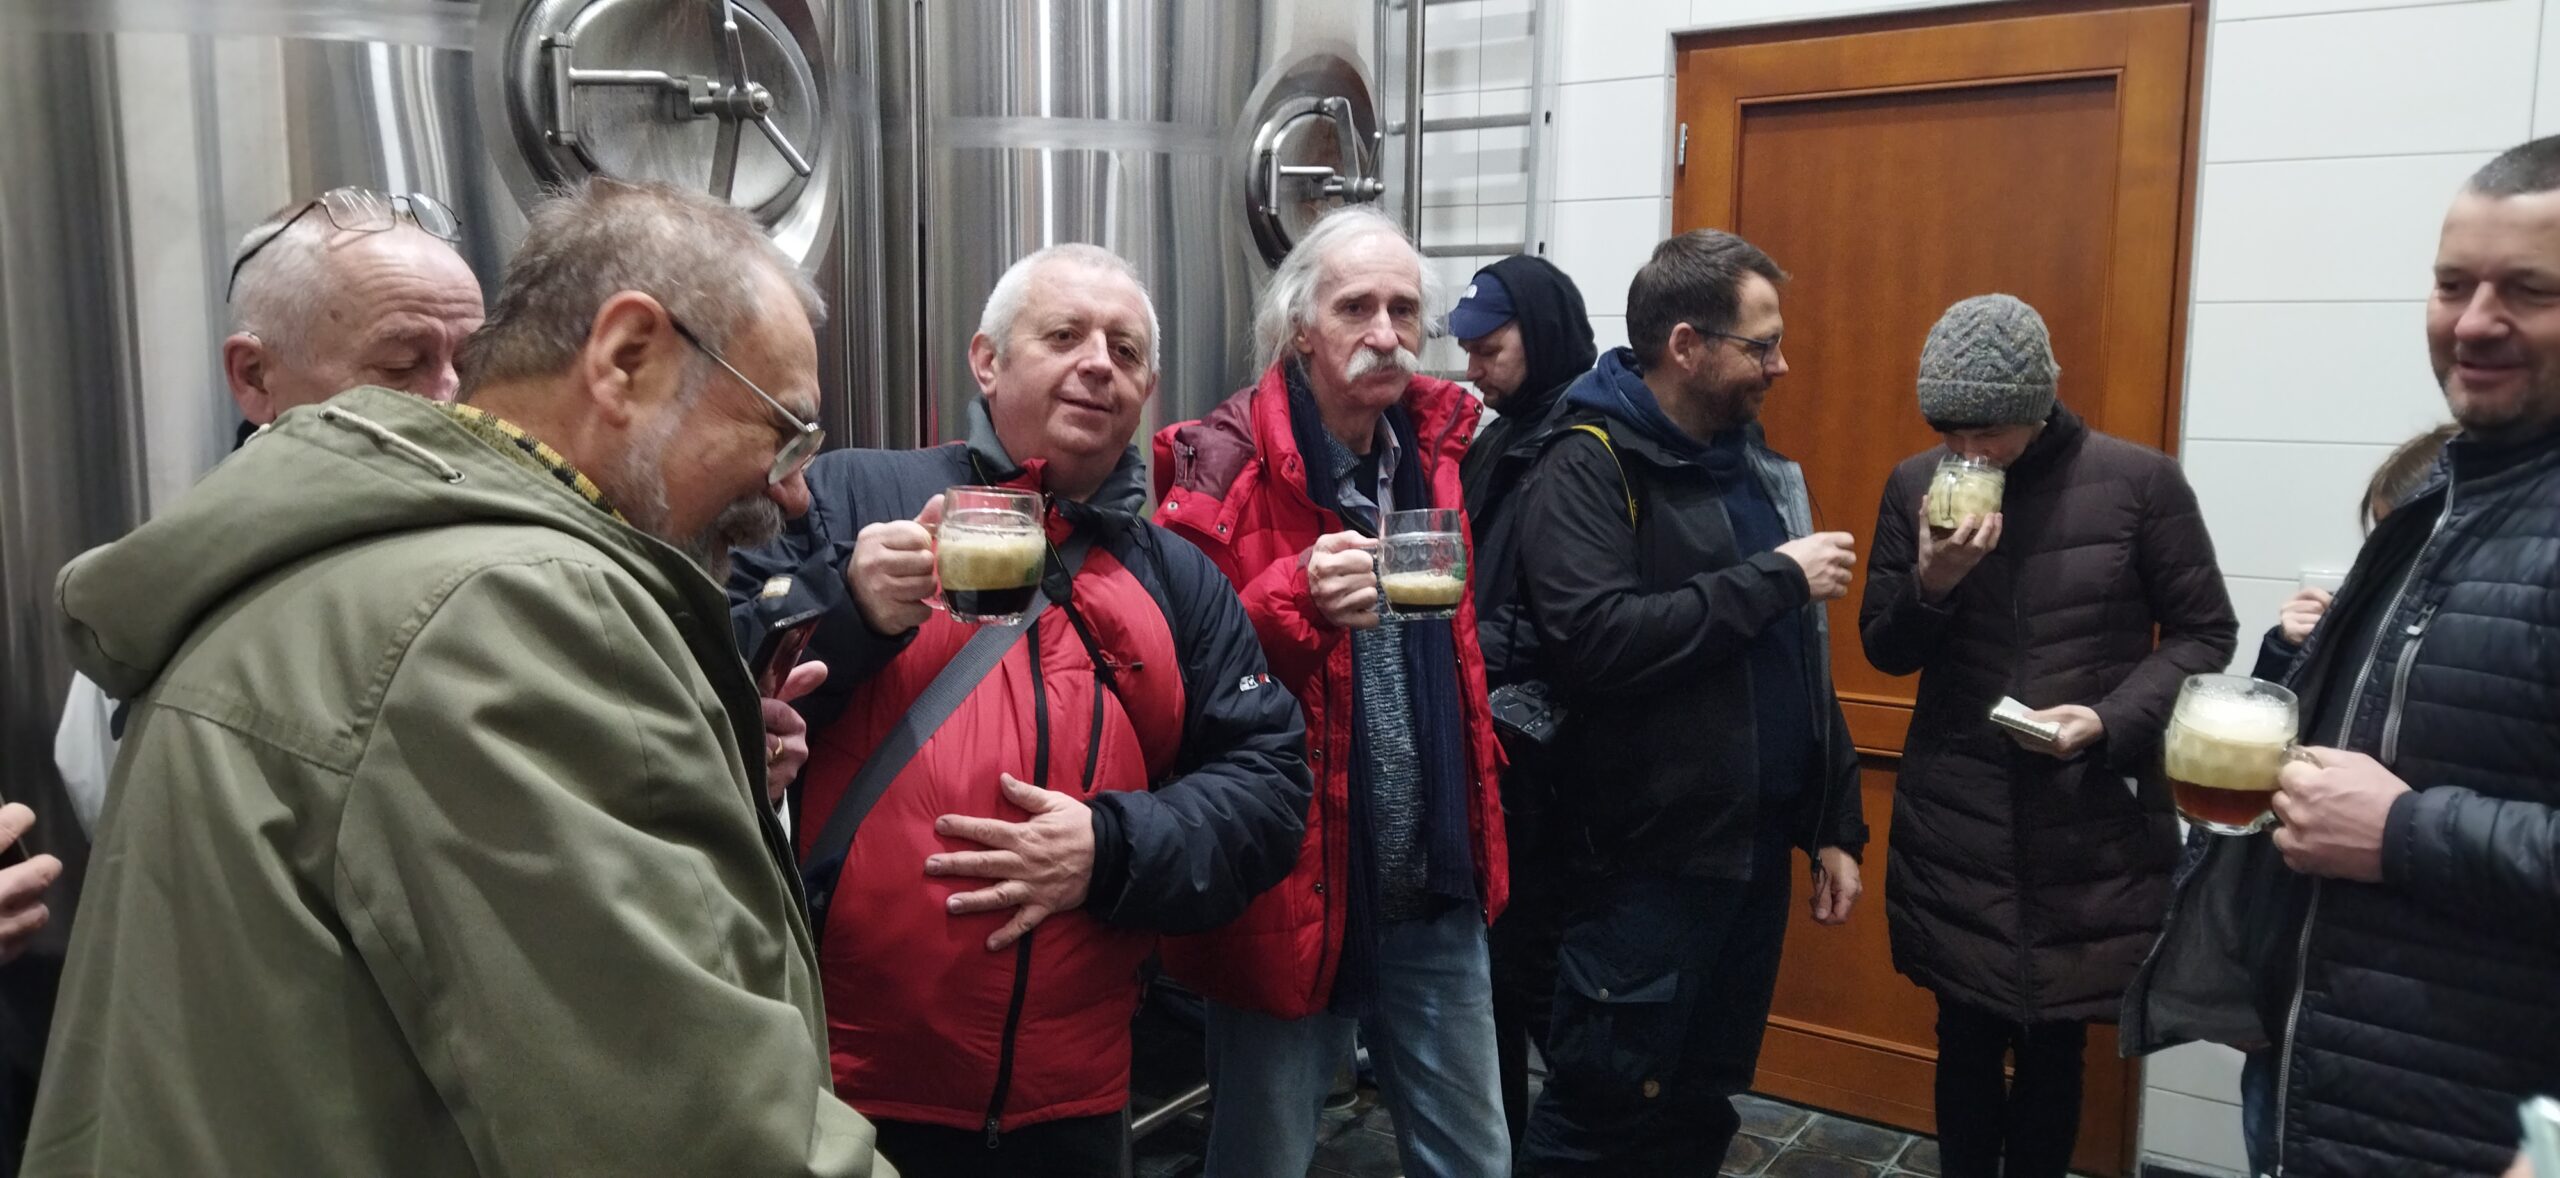 Část polských novinářů stojí u pivního tanku v rámci exkurze. Součástí byla i ochutnávka místního piva.